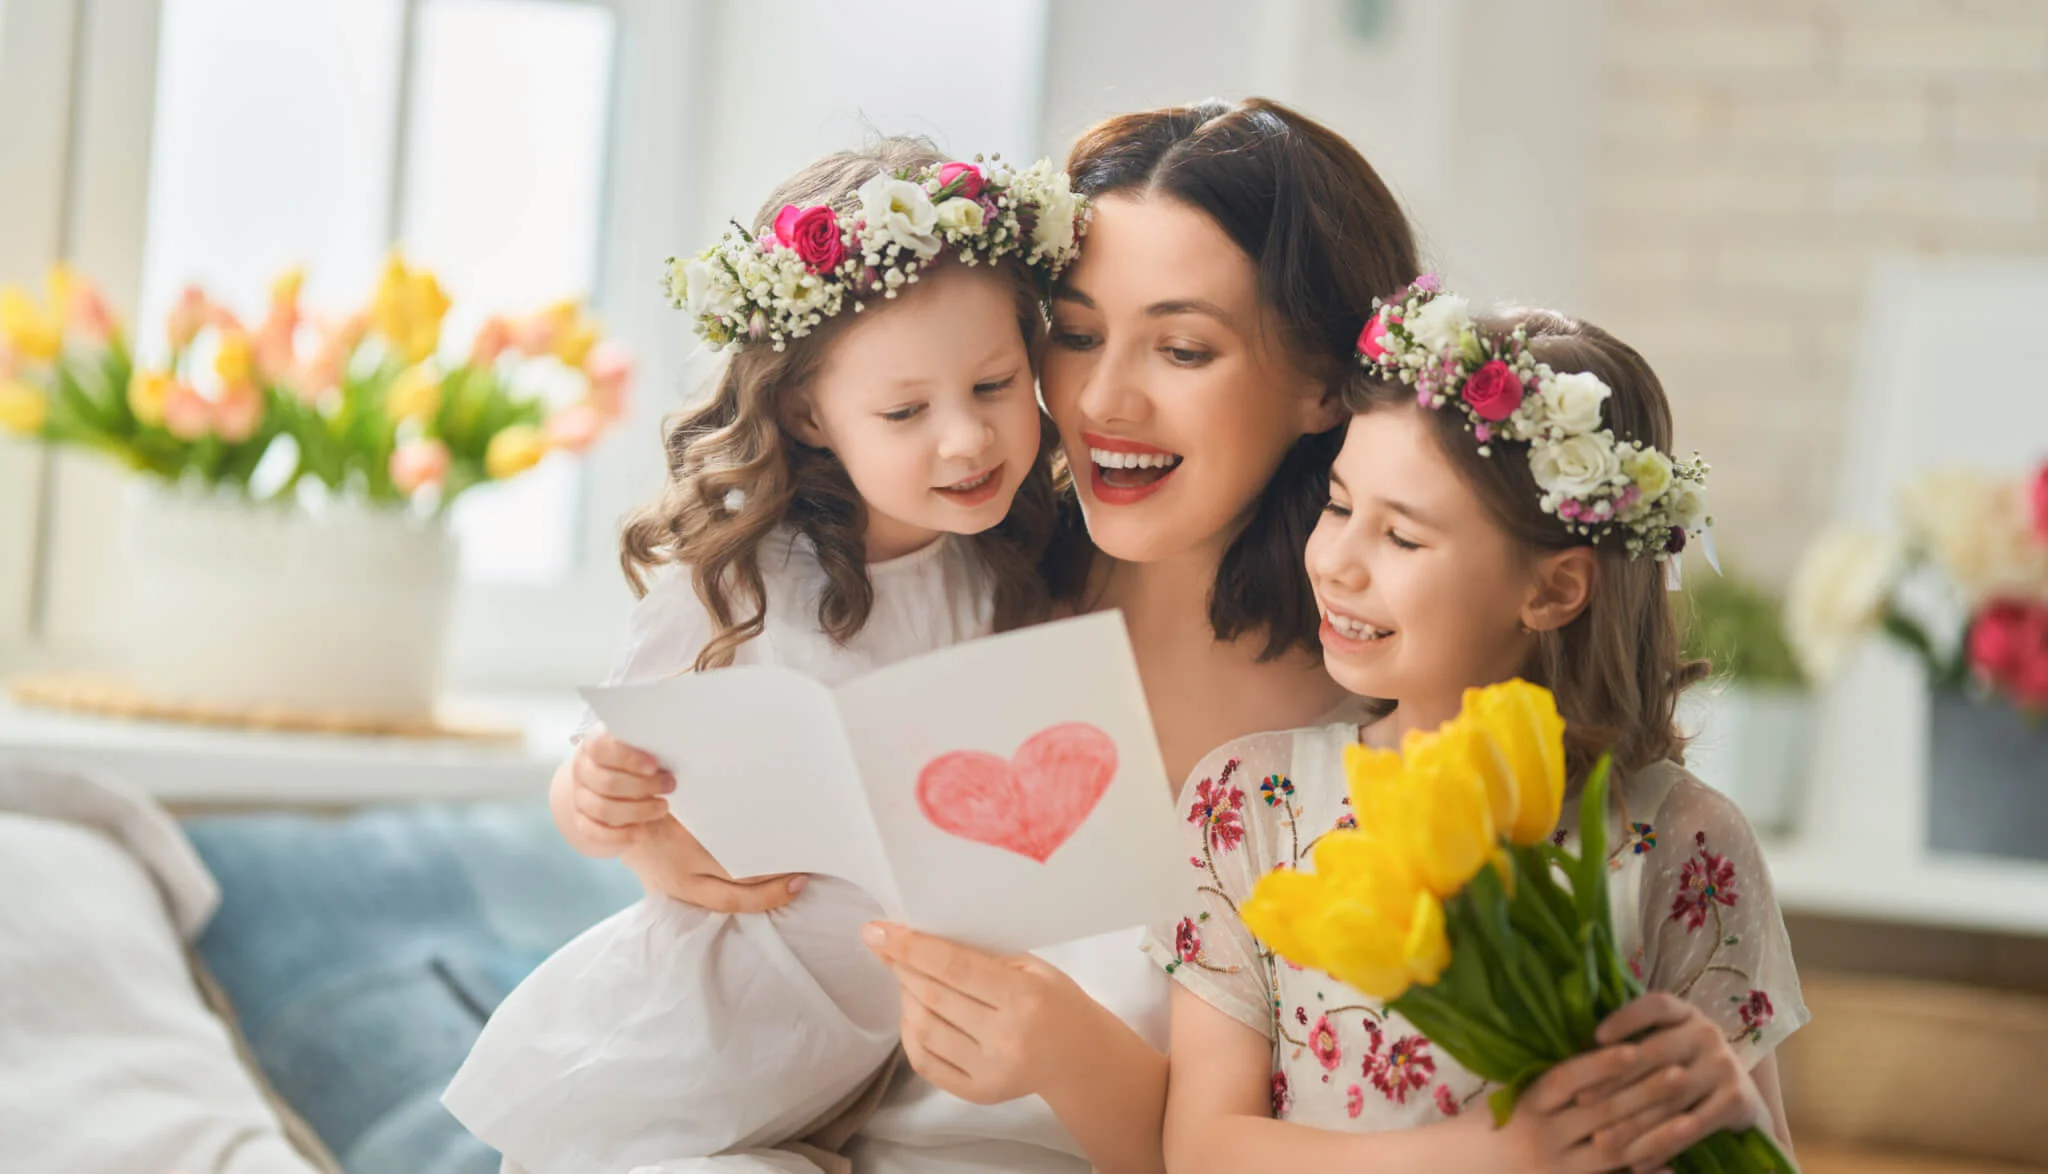 چگونه با این 11 سورپرایز روز مادر و روز زن را جشن بگیریم؟